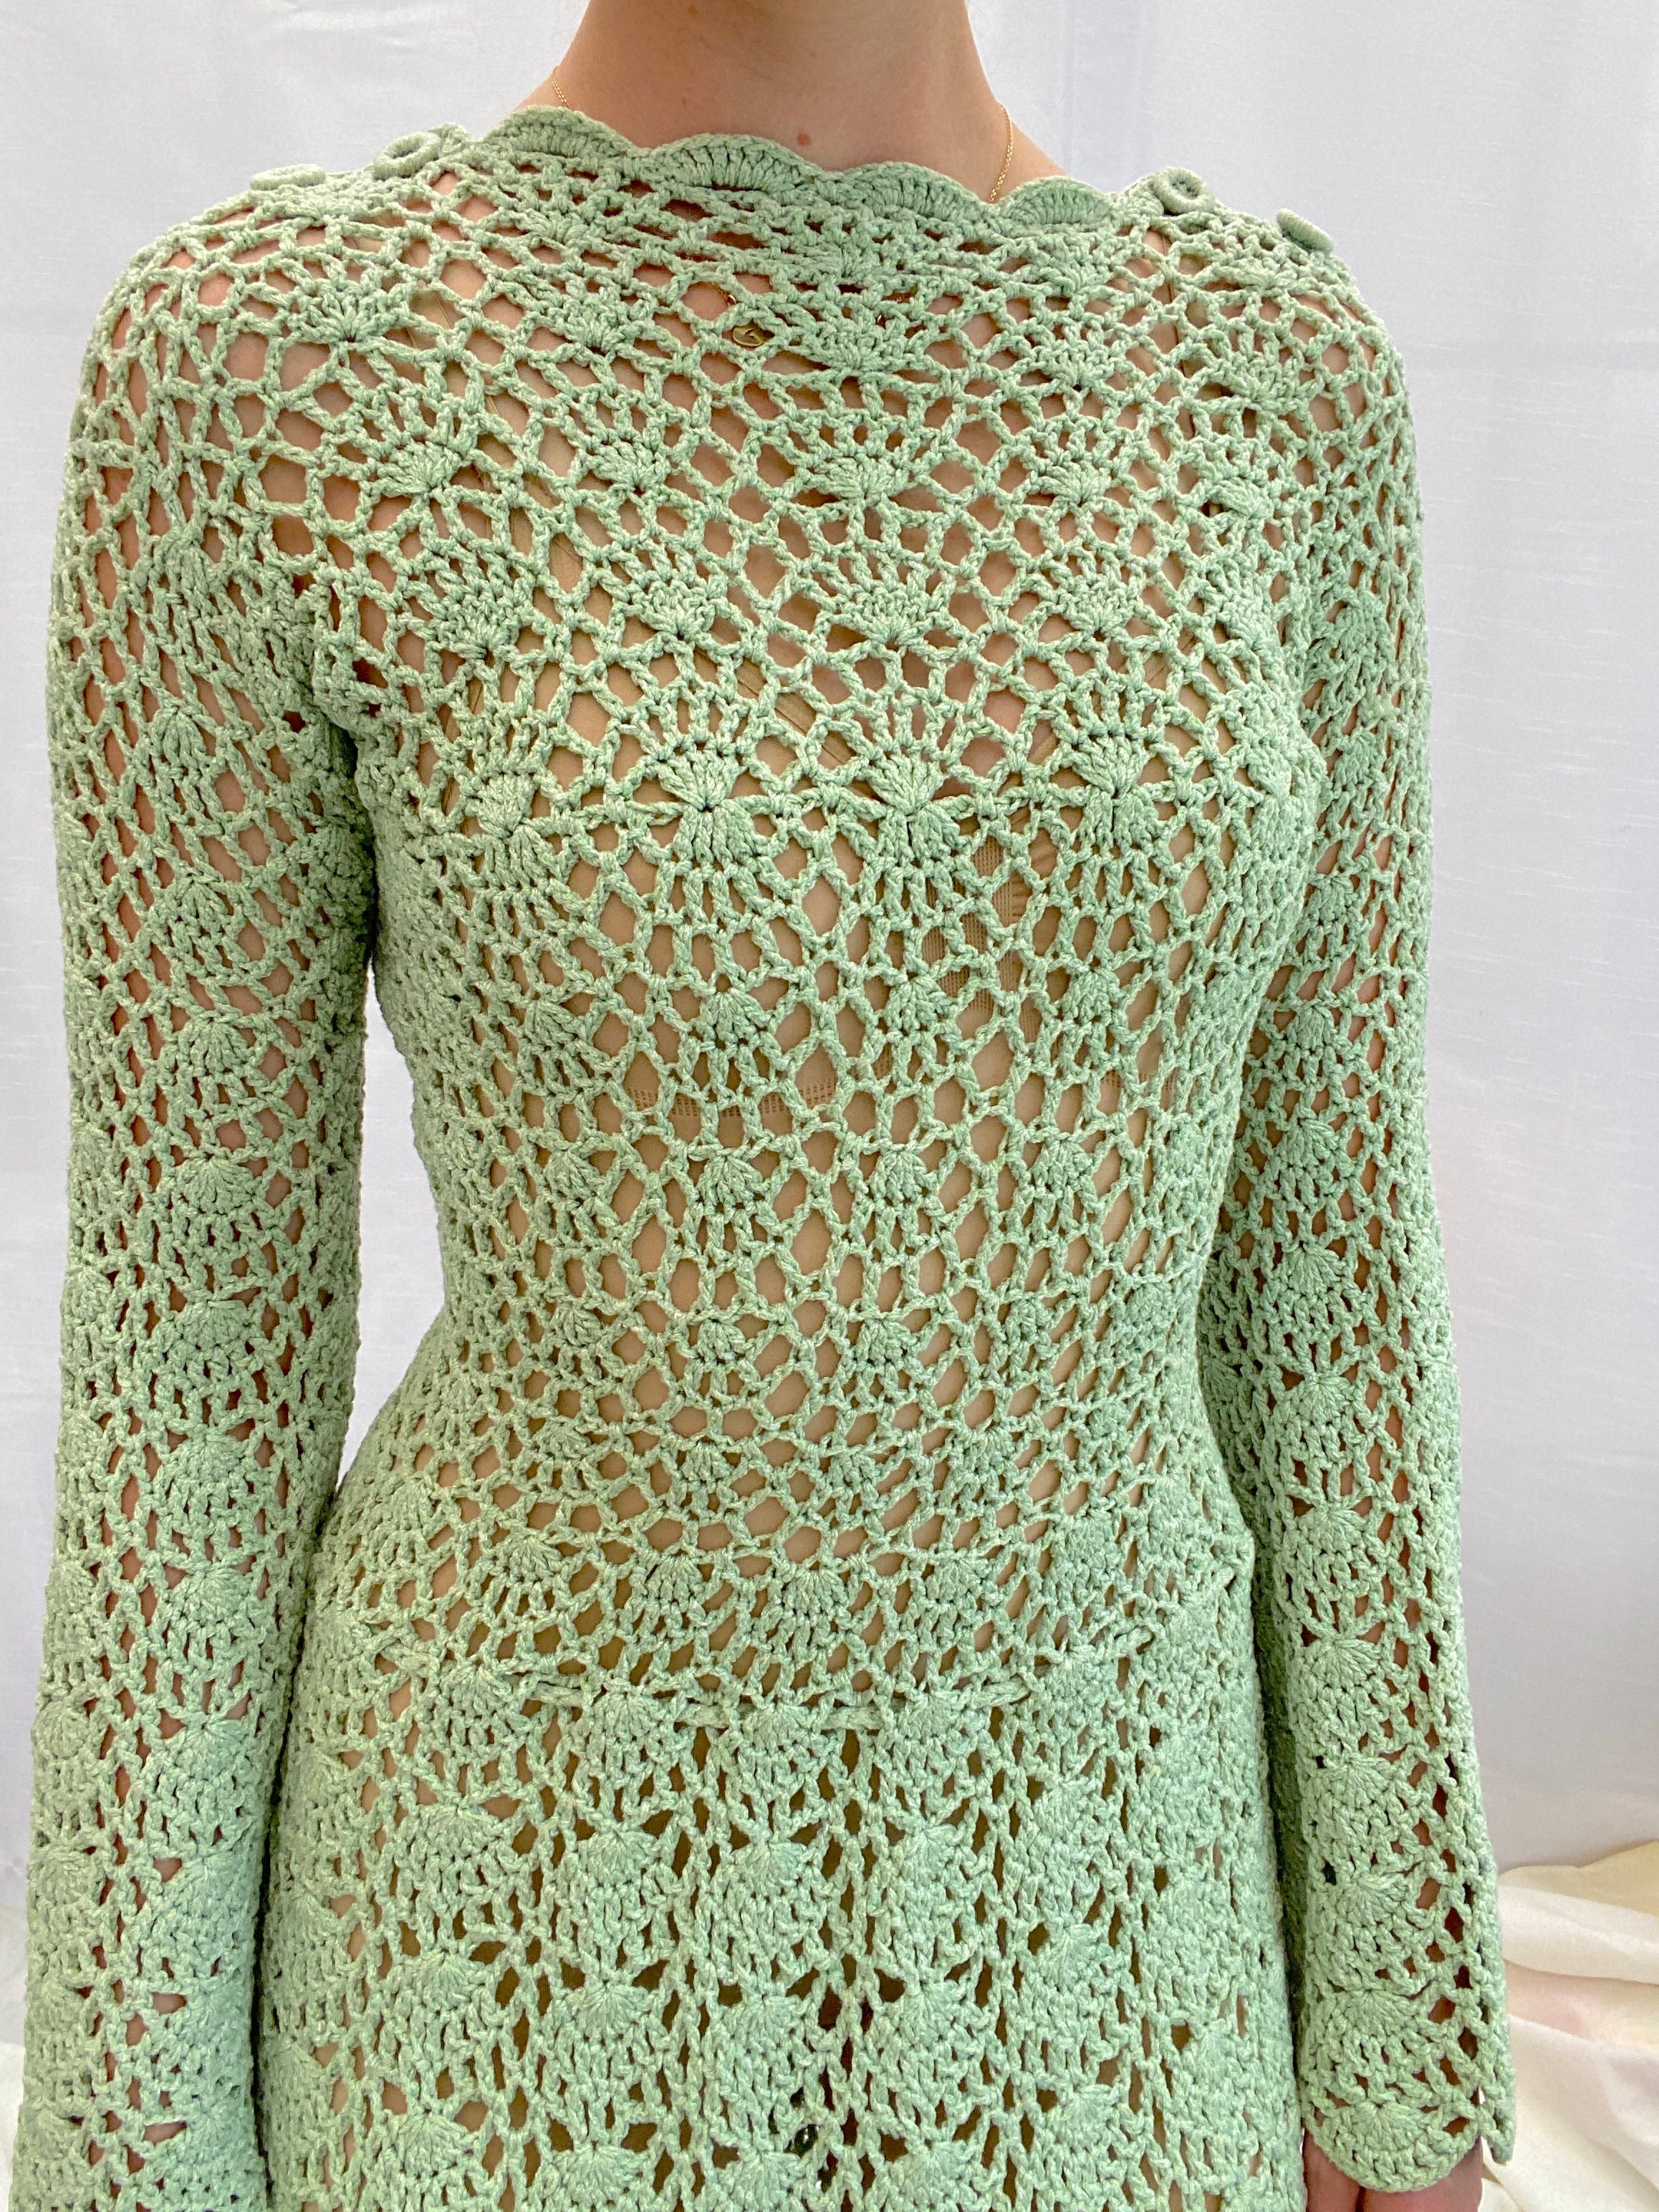 1970's Green Crochet Dress